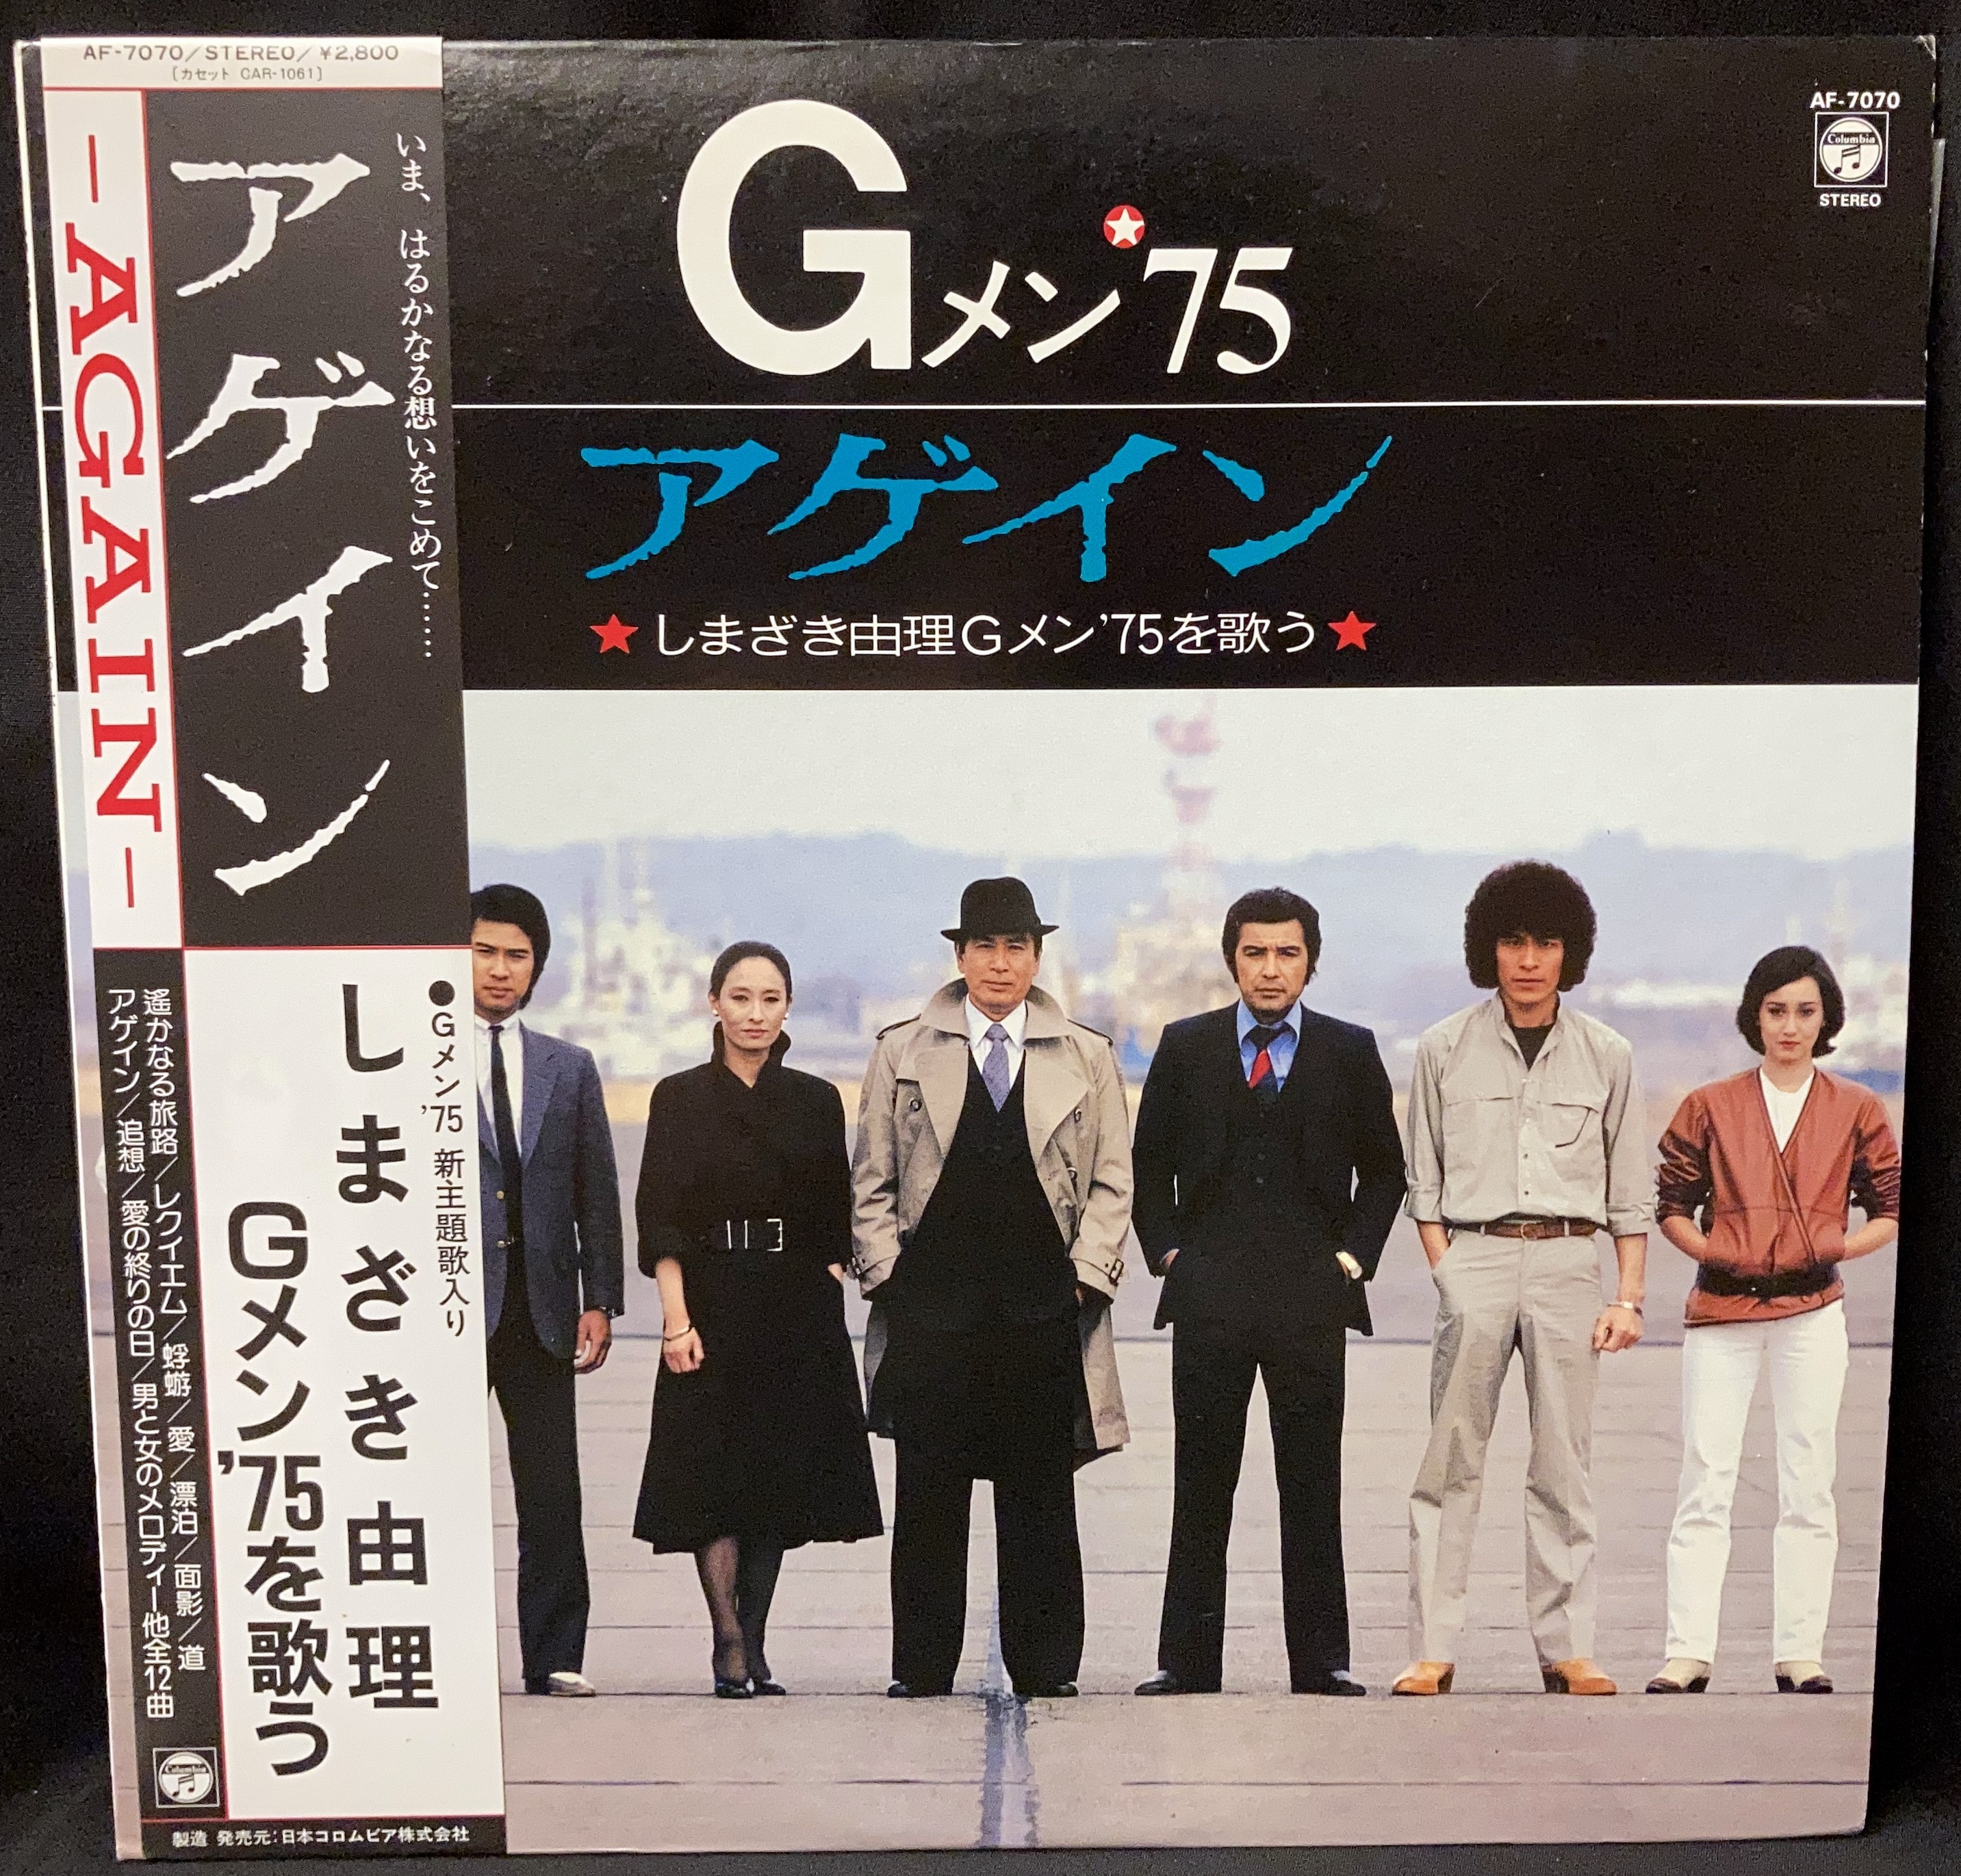 コロムビアレコード AF-7070 『アゲイン しまざき由理Gメン'75を歌う